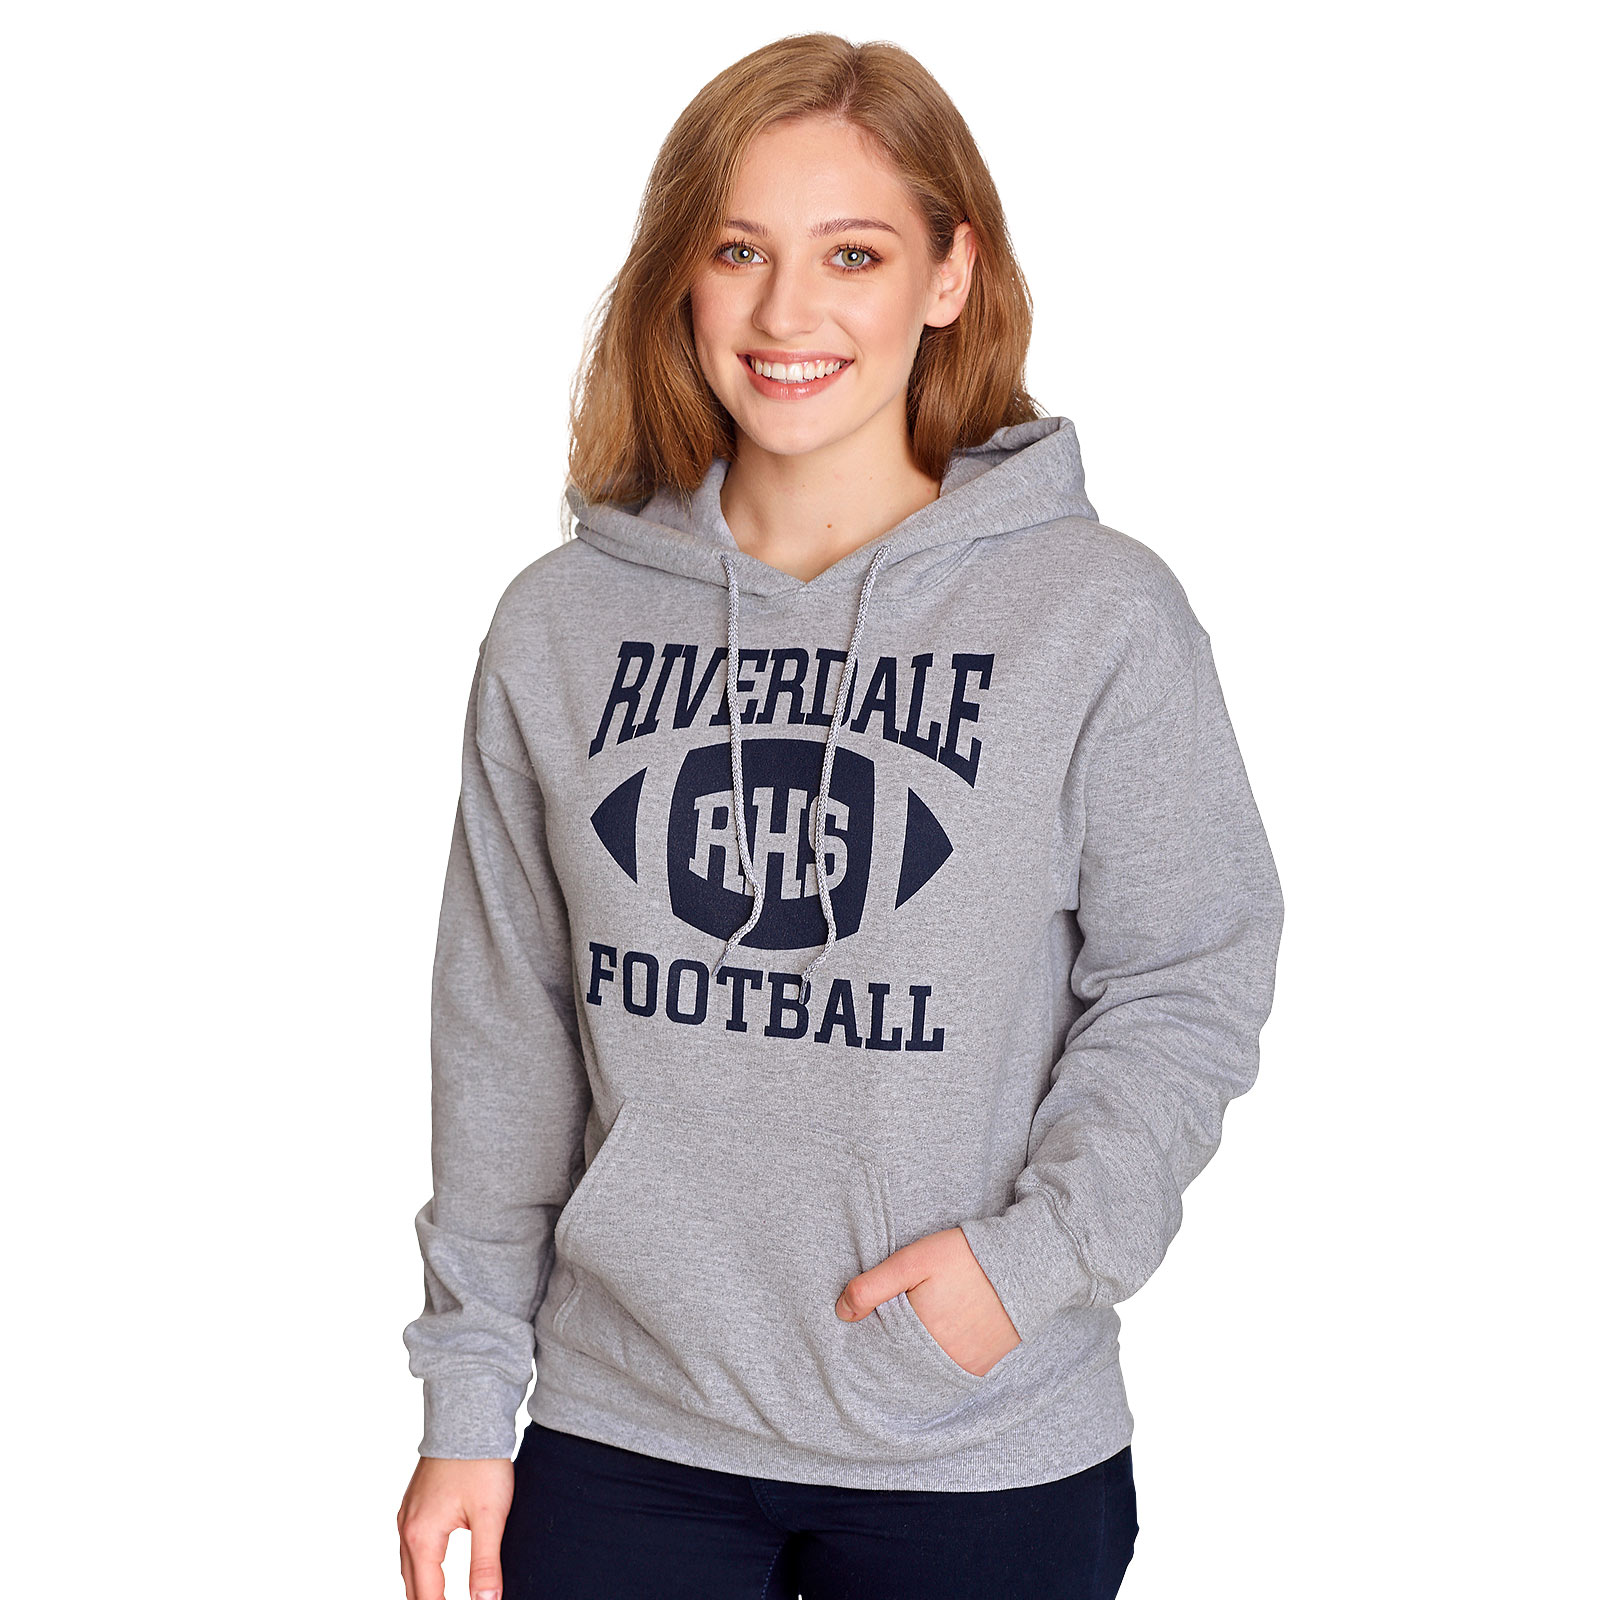 Riverdale - RHS Football Team Hoodie Grey